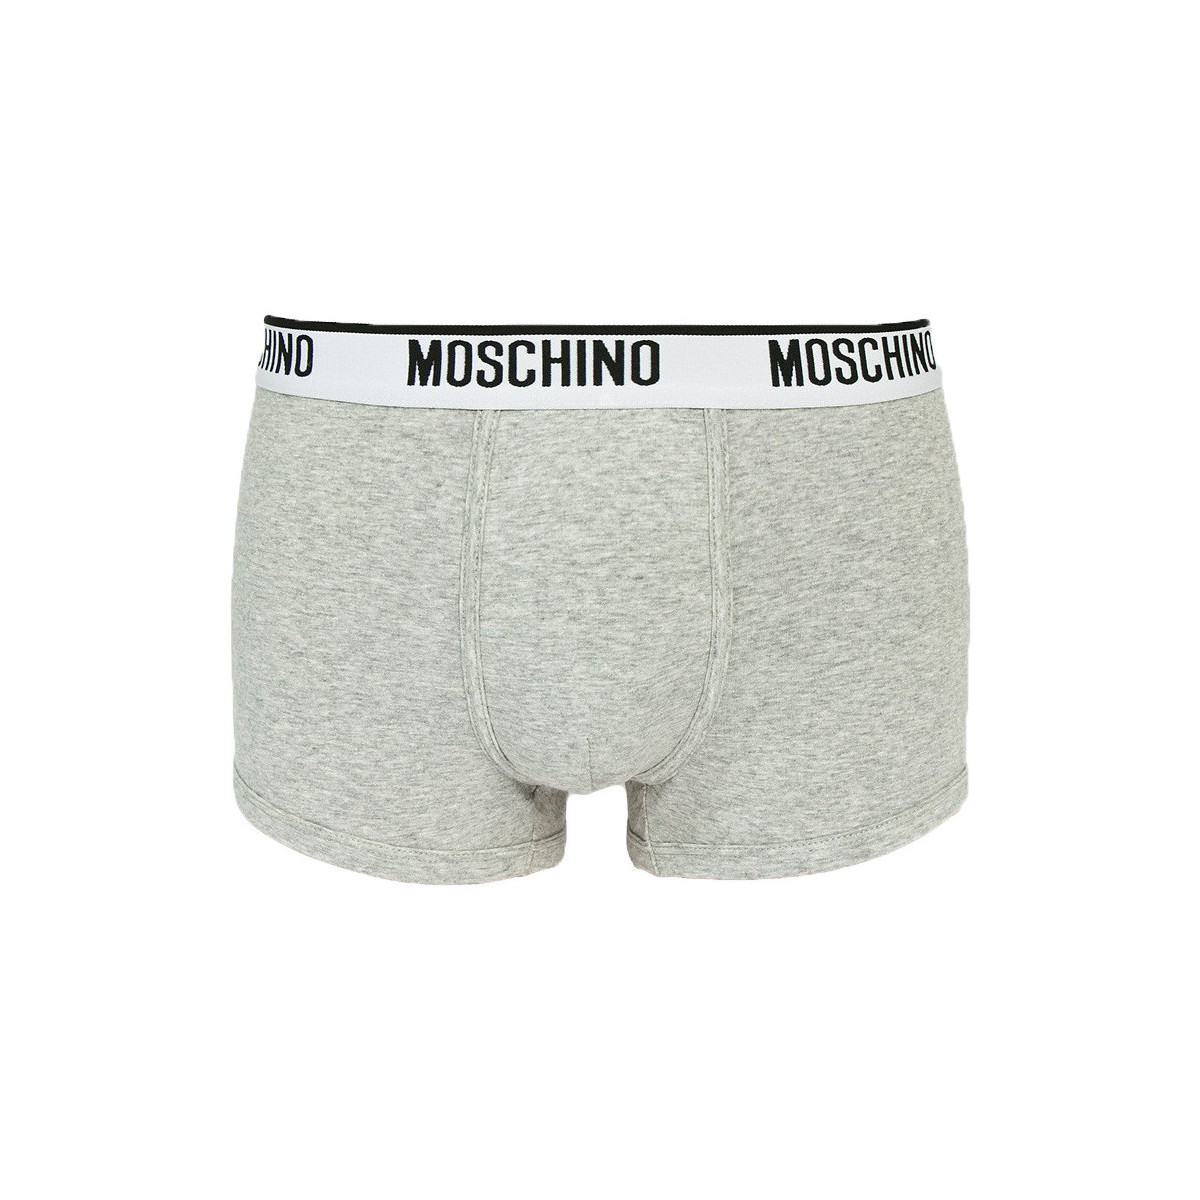 moschino underwear sale